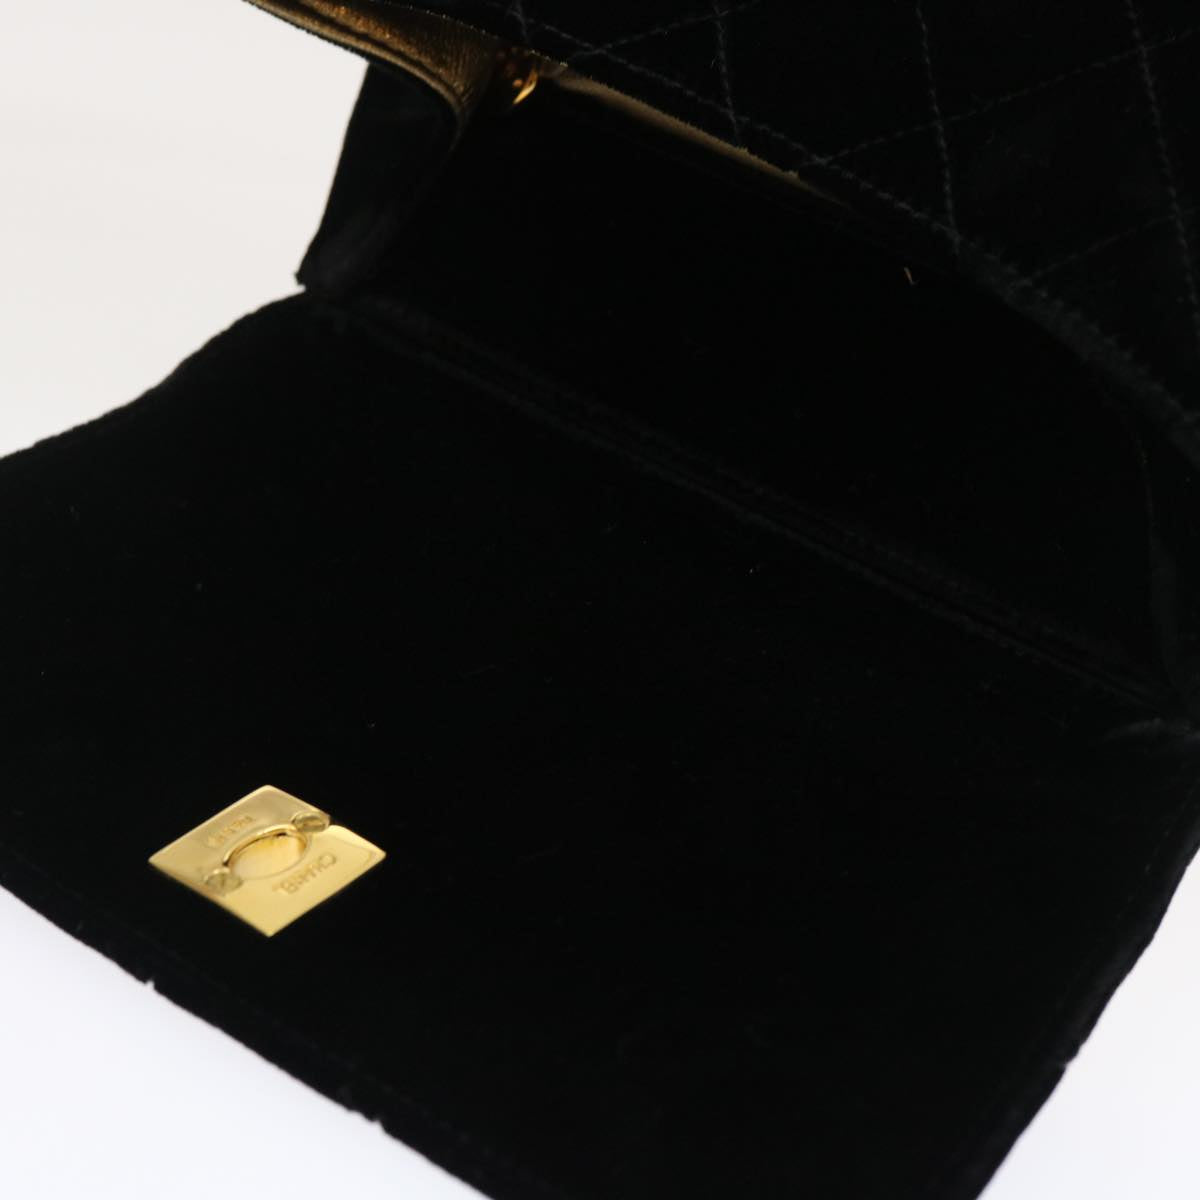 CHANEL Turn Lock Flap Matelasse Hand Bag velvet Black Gold CC Auth 295